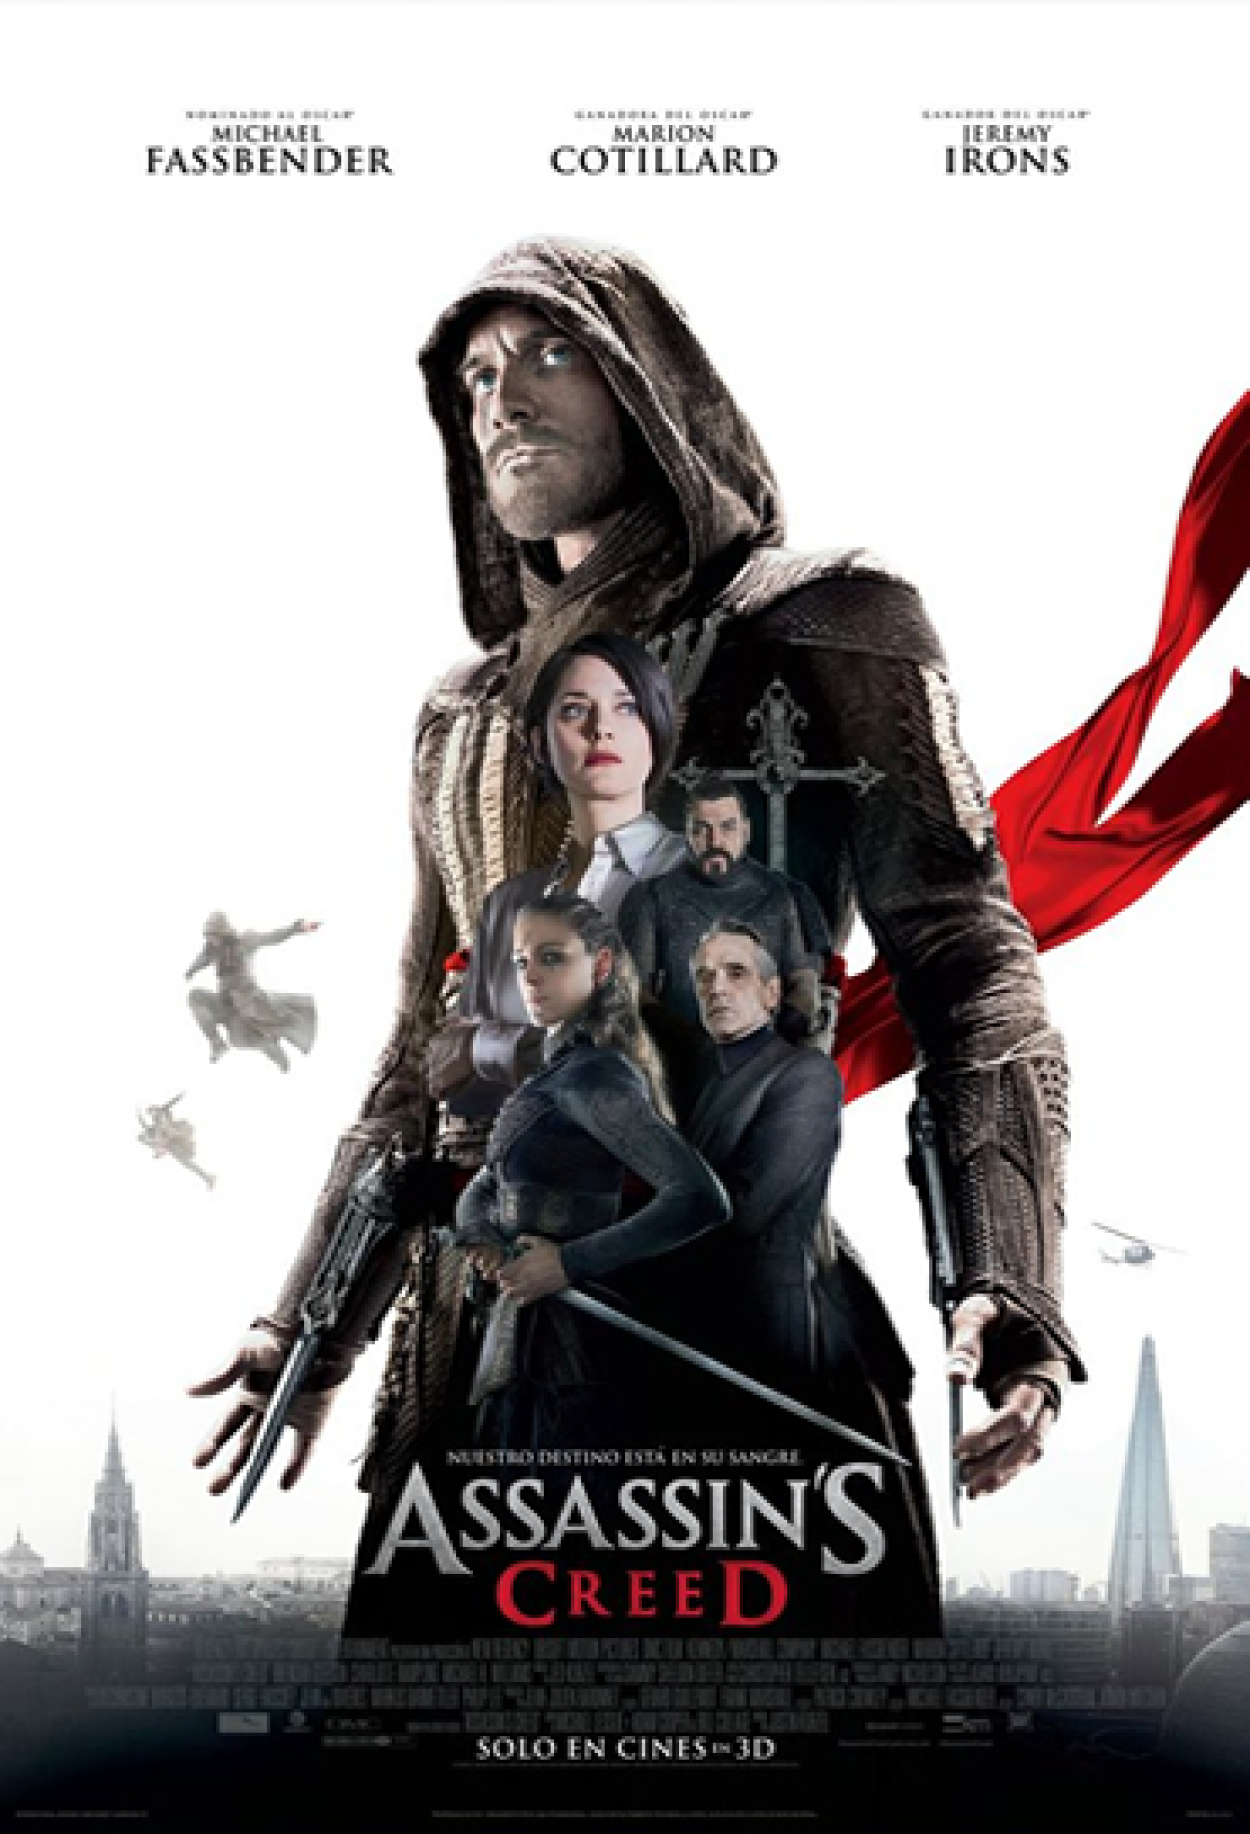 Assassin's Creed - O Filme (Filme), Trailer, Sinopse e Curiosidades -  Cinema10